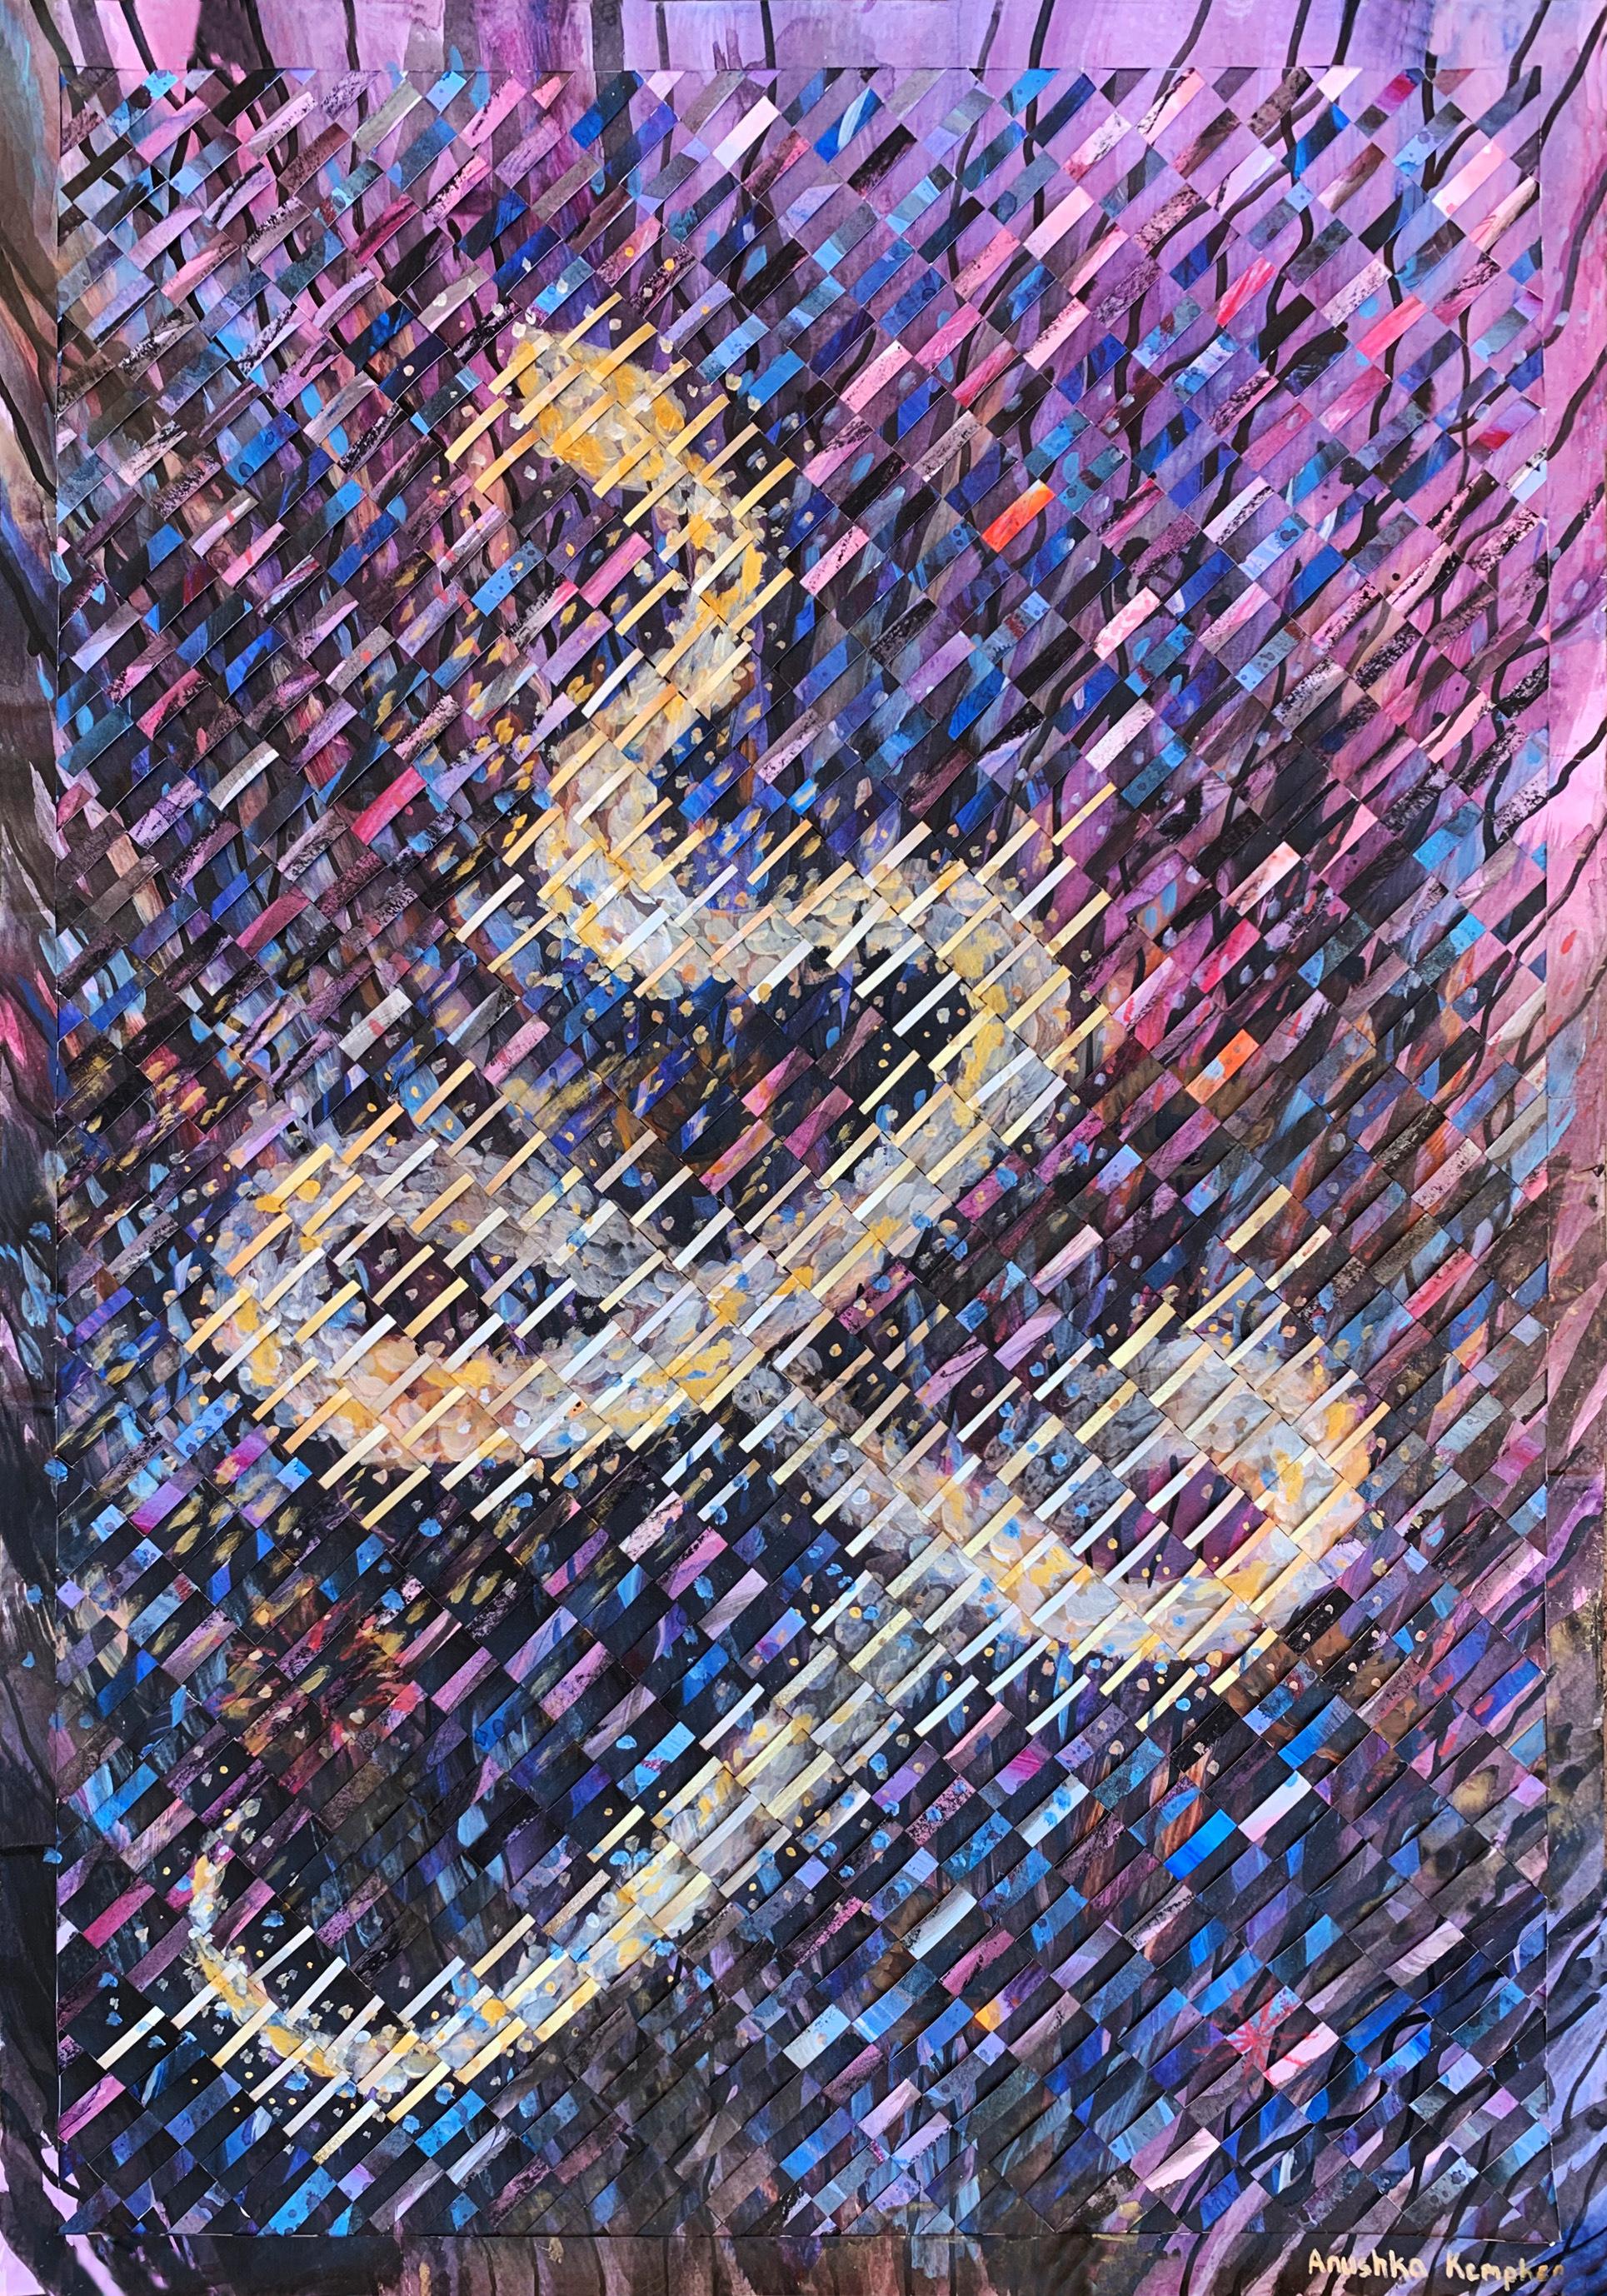 Purple Mixed Media on Woven Fabriano Painting "KaliMa" - Mixed Media Art by Anushka Kempken